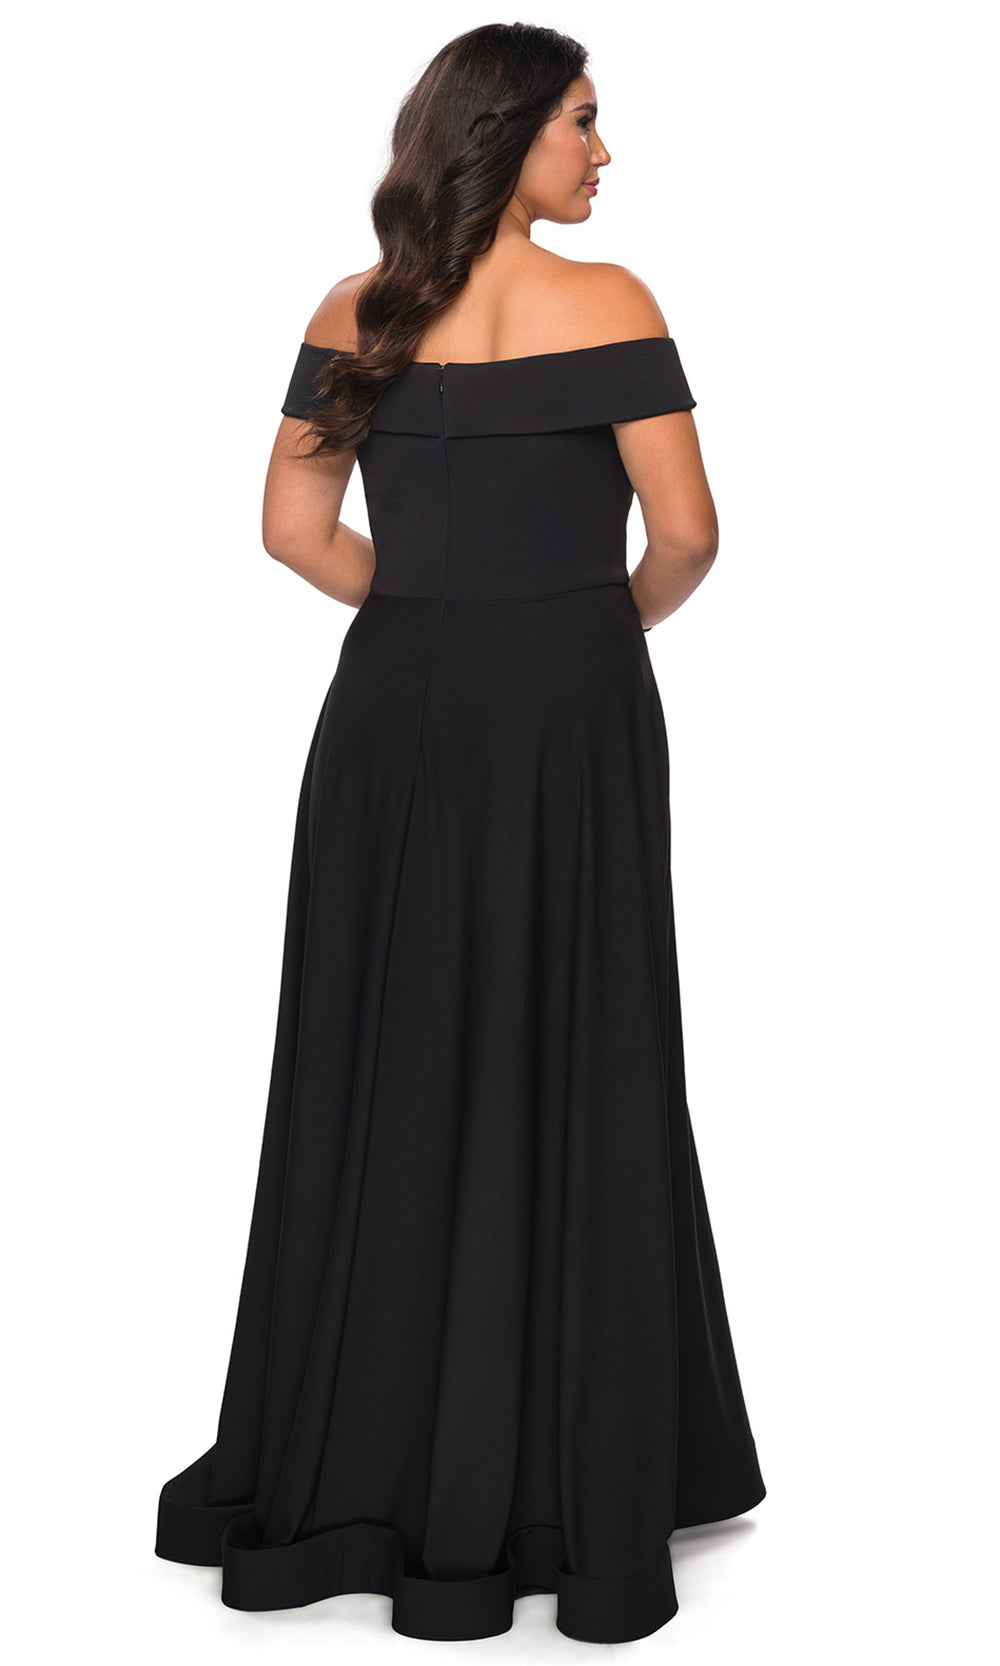 La Femme - 29007 Off Shoulder Jersey A-Line Dress With Slit In Black